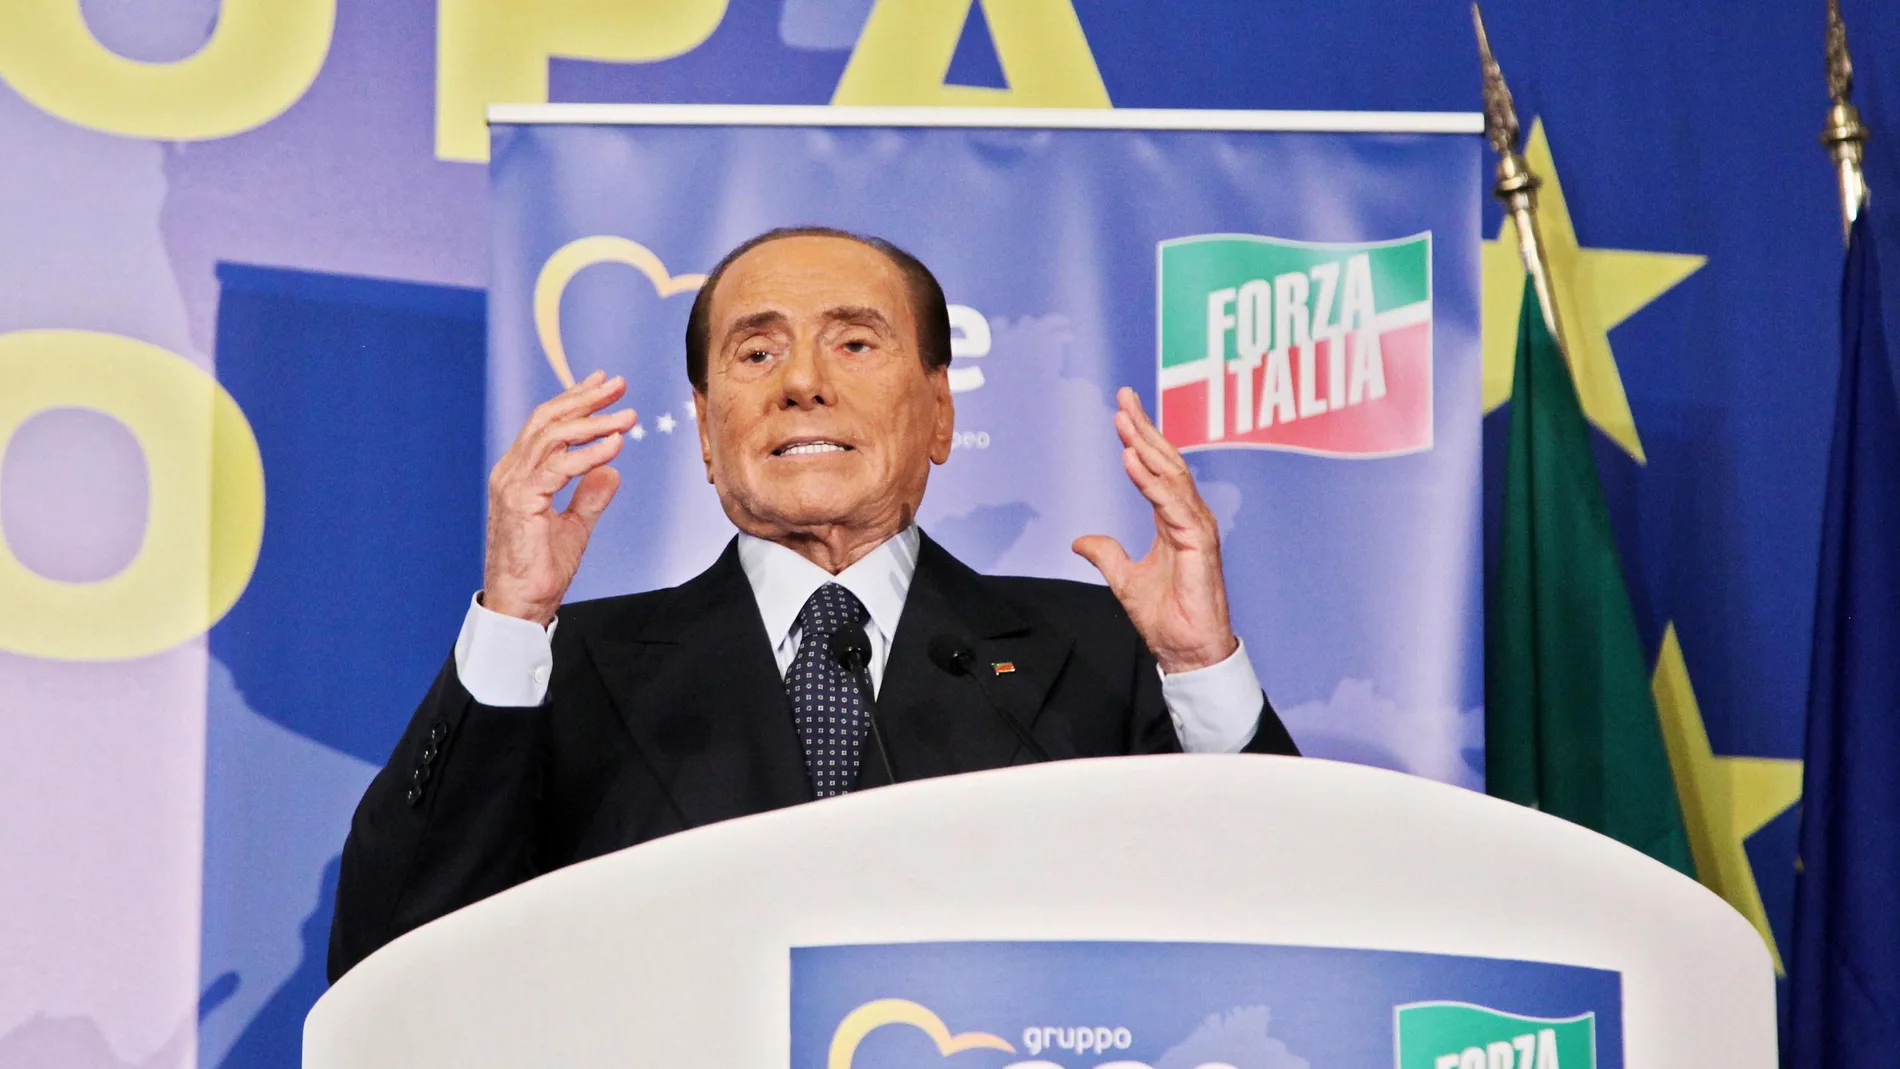 El presidente de Forza Italia Silvio Berlusconi